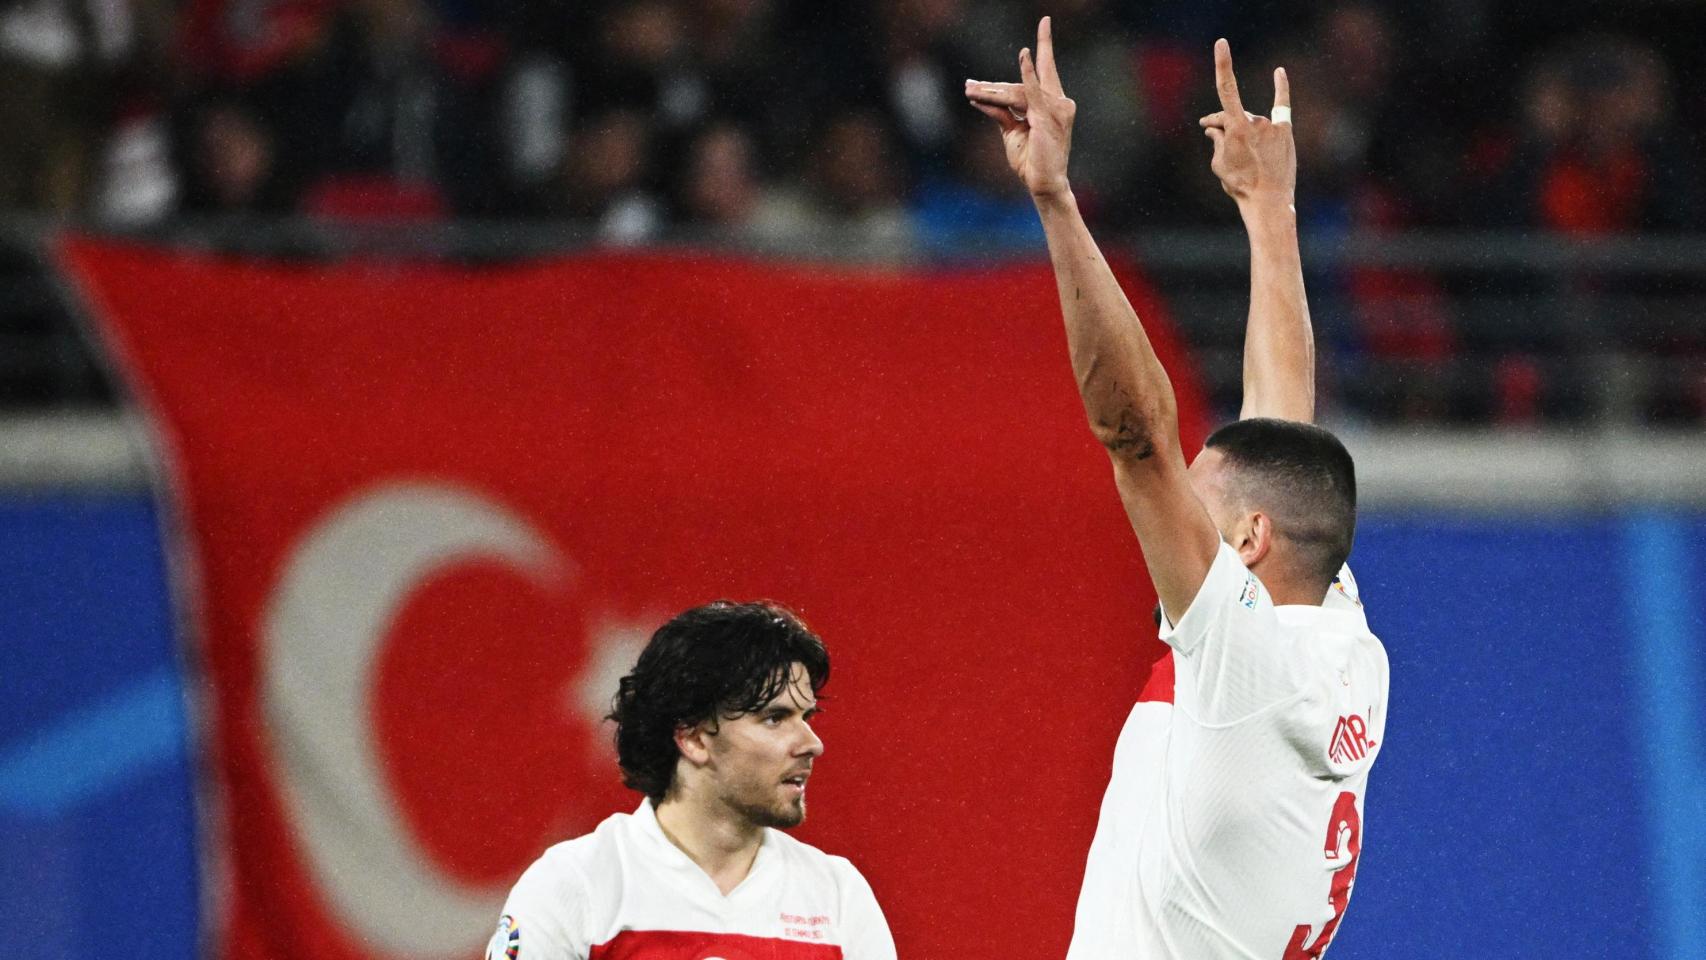 Otra perspectiva del polémico gesto realizado por Demiral en la celebración de su segundo gol ante Austria este martes en el encuentro de octavos de la Eurocopa.